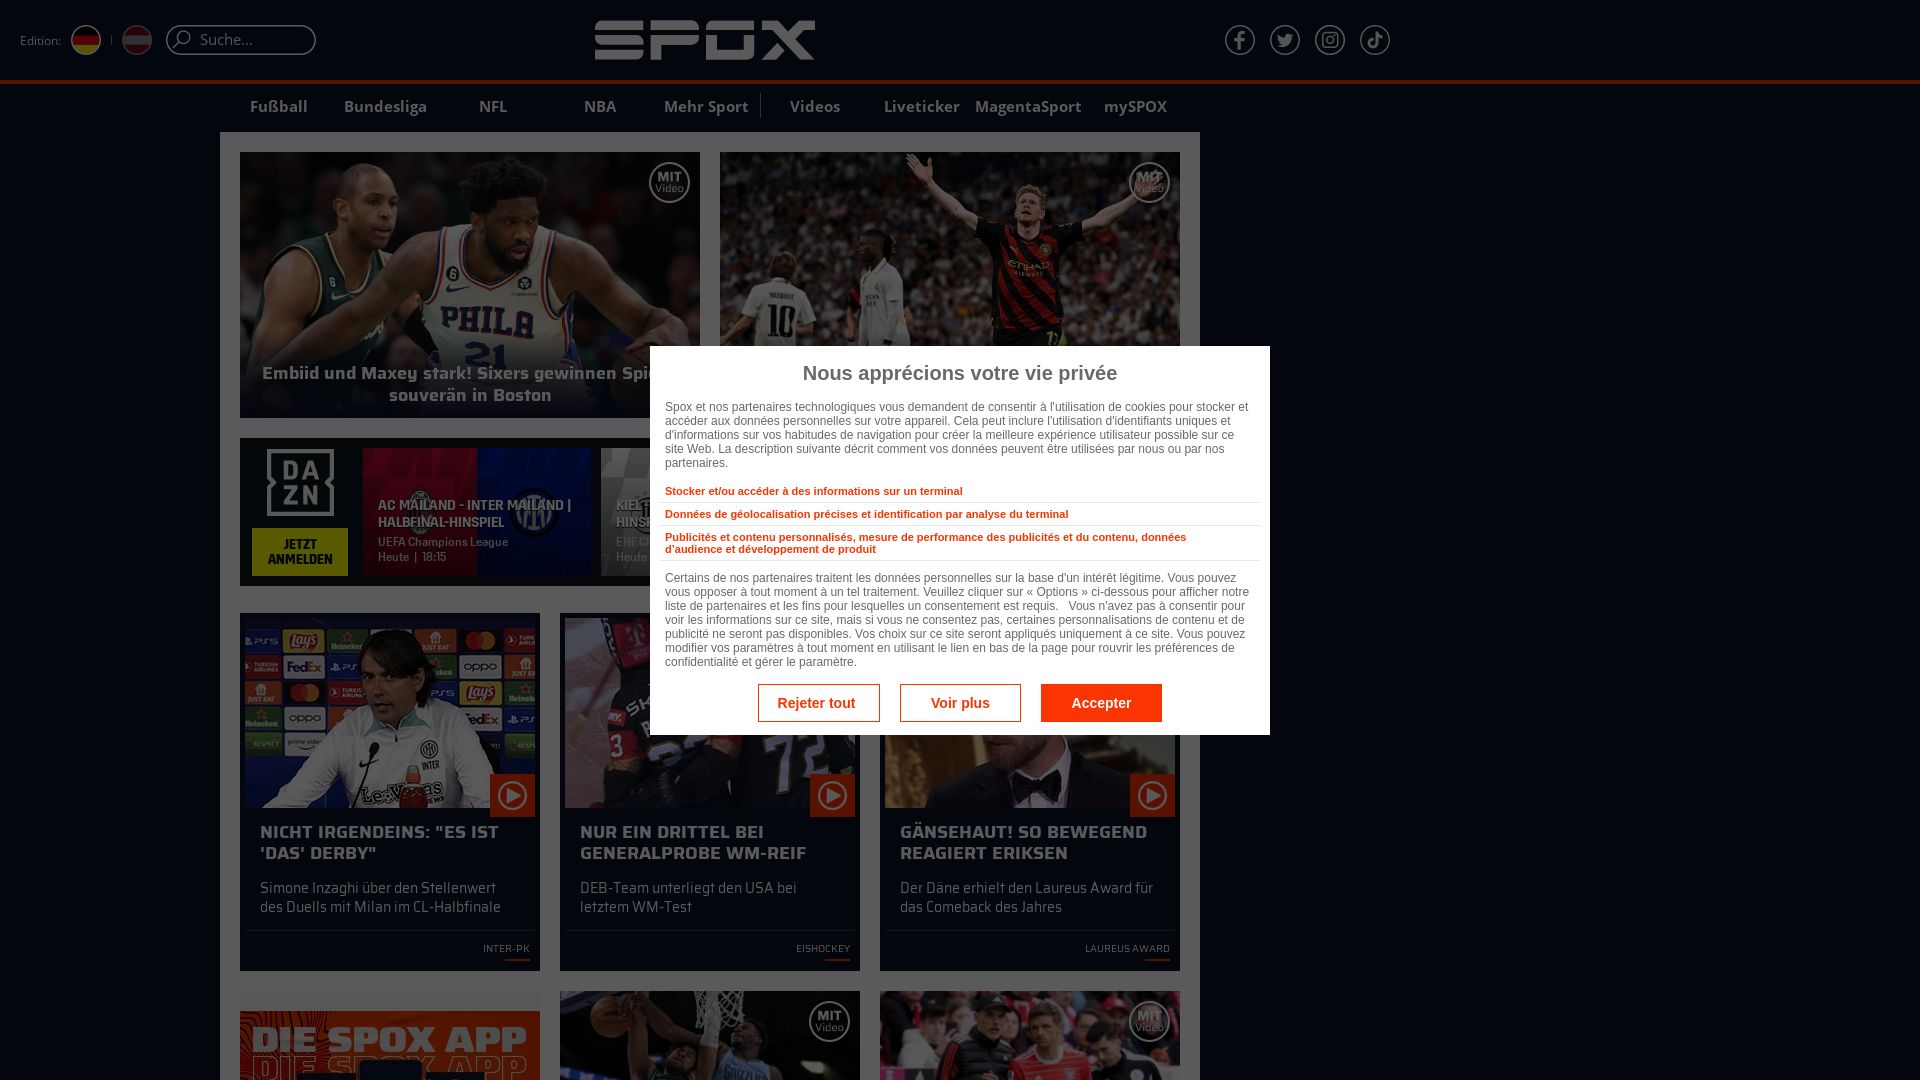 Website status spox.com is   ONLINE